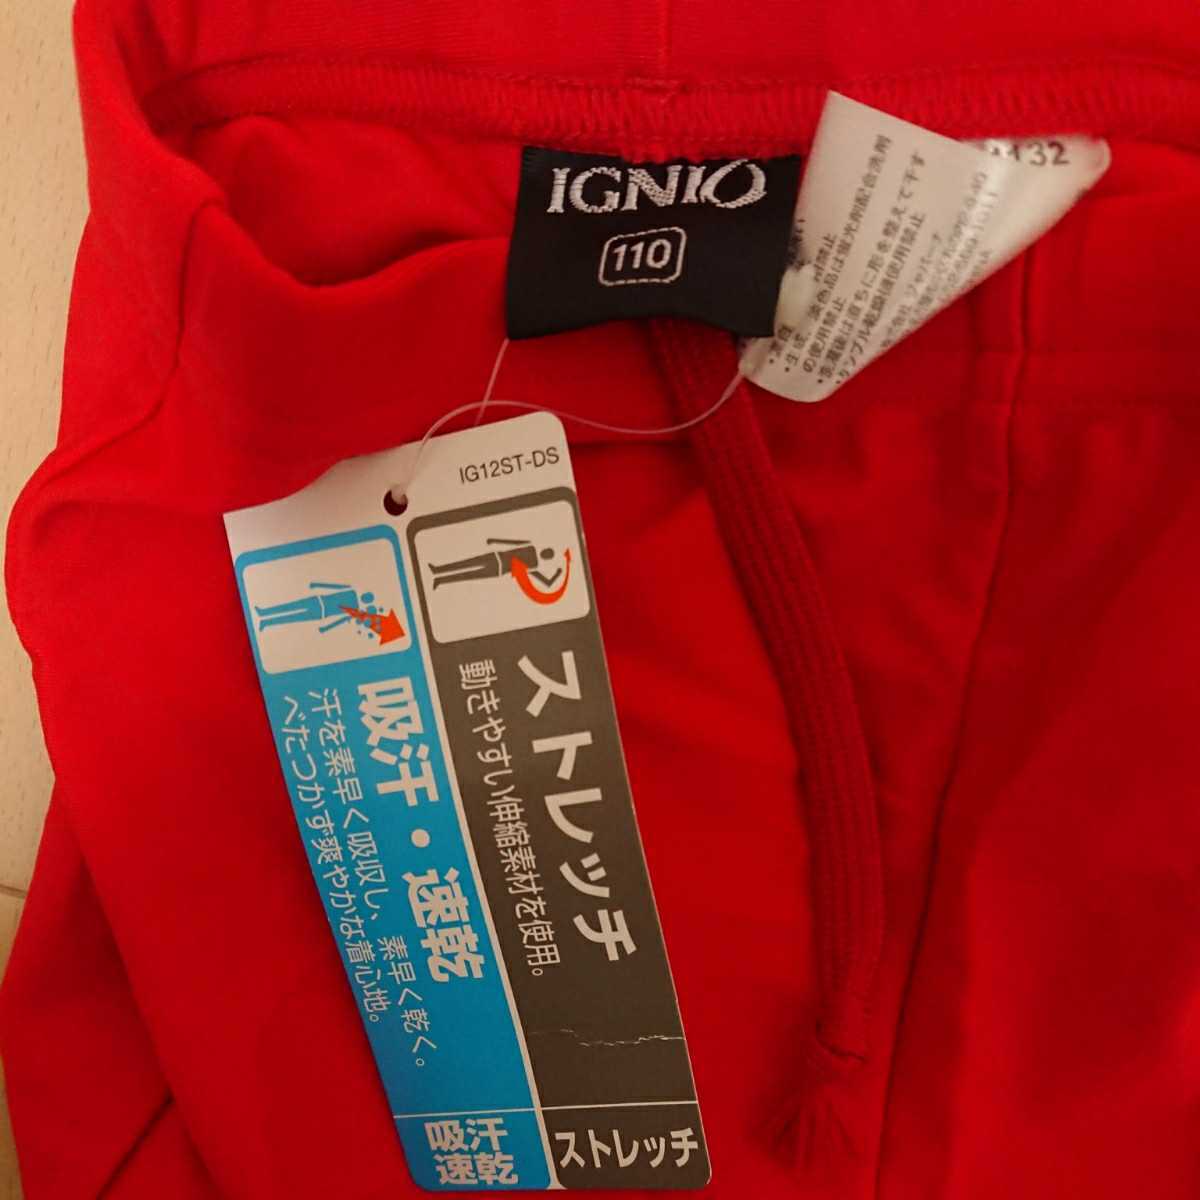  с биркой IGNIOignio внутренний брюки 110 размер красный 